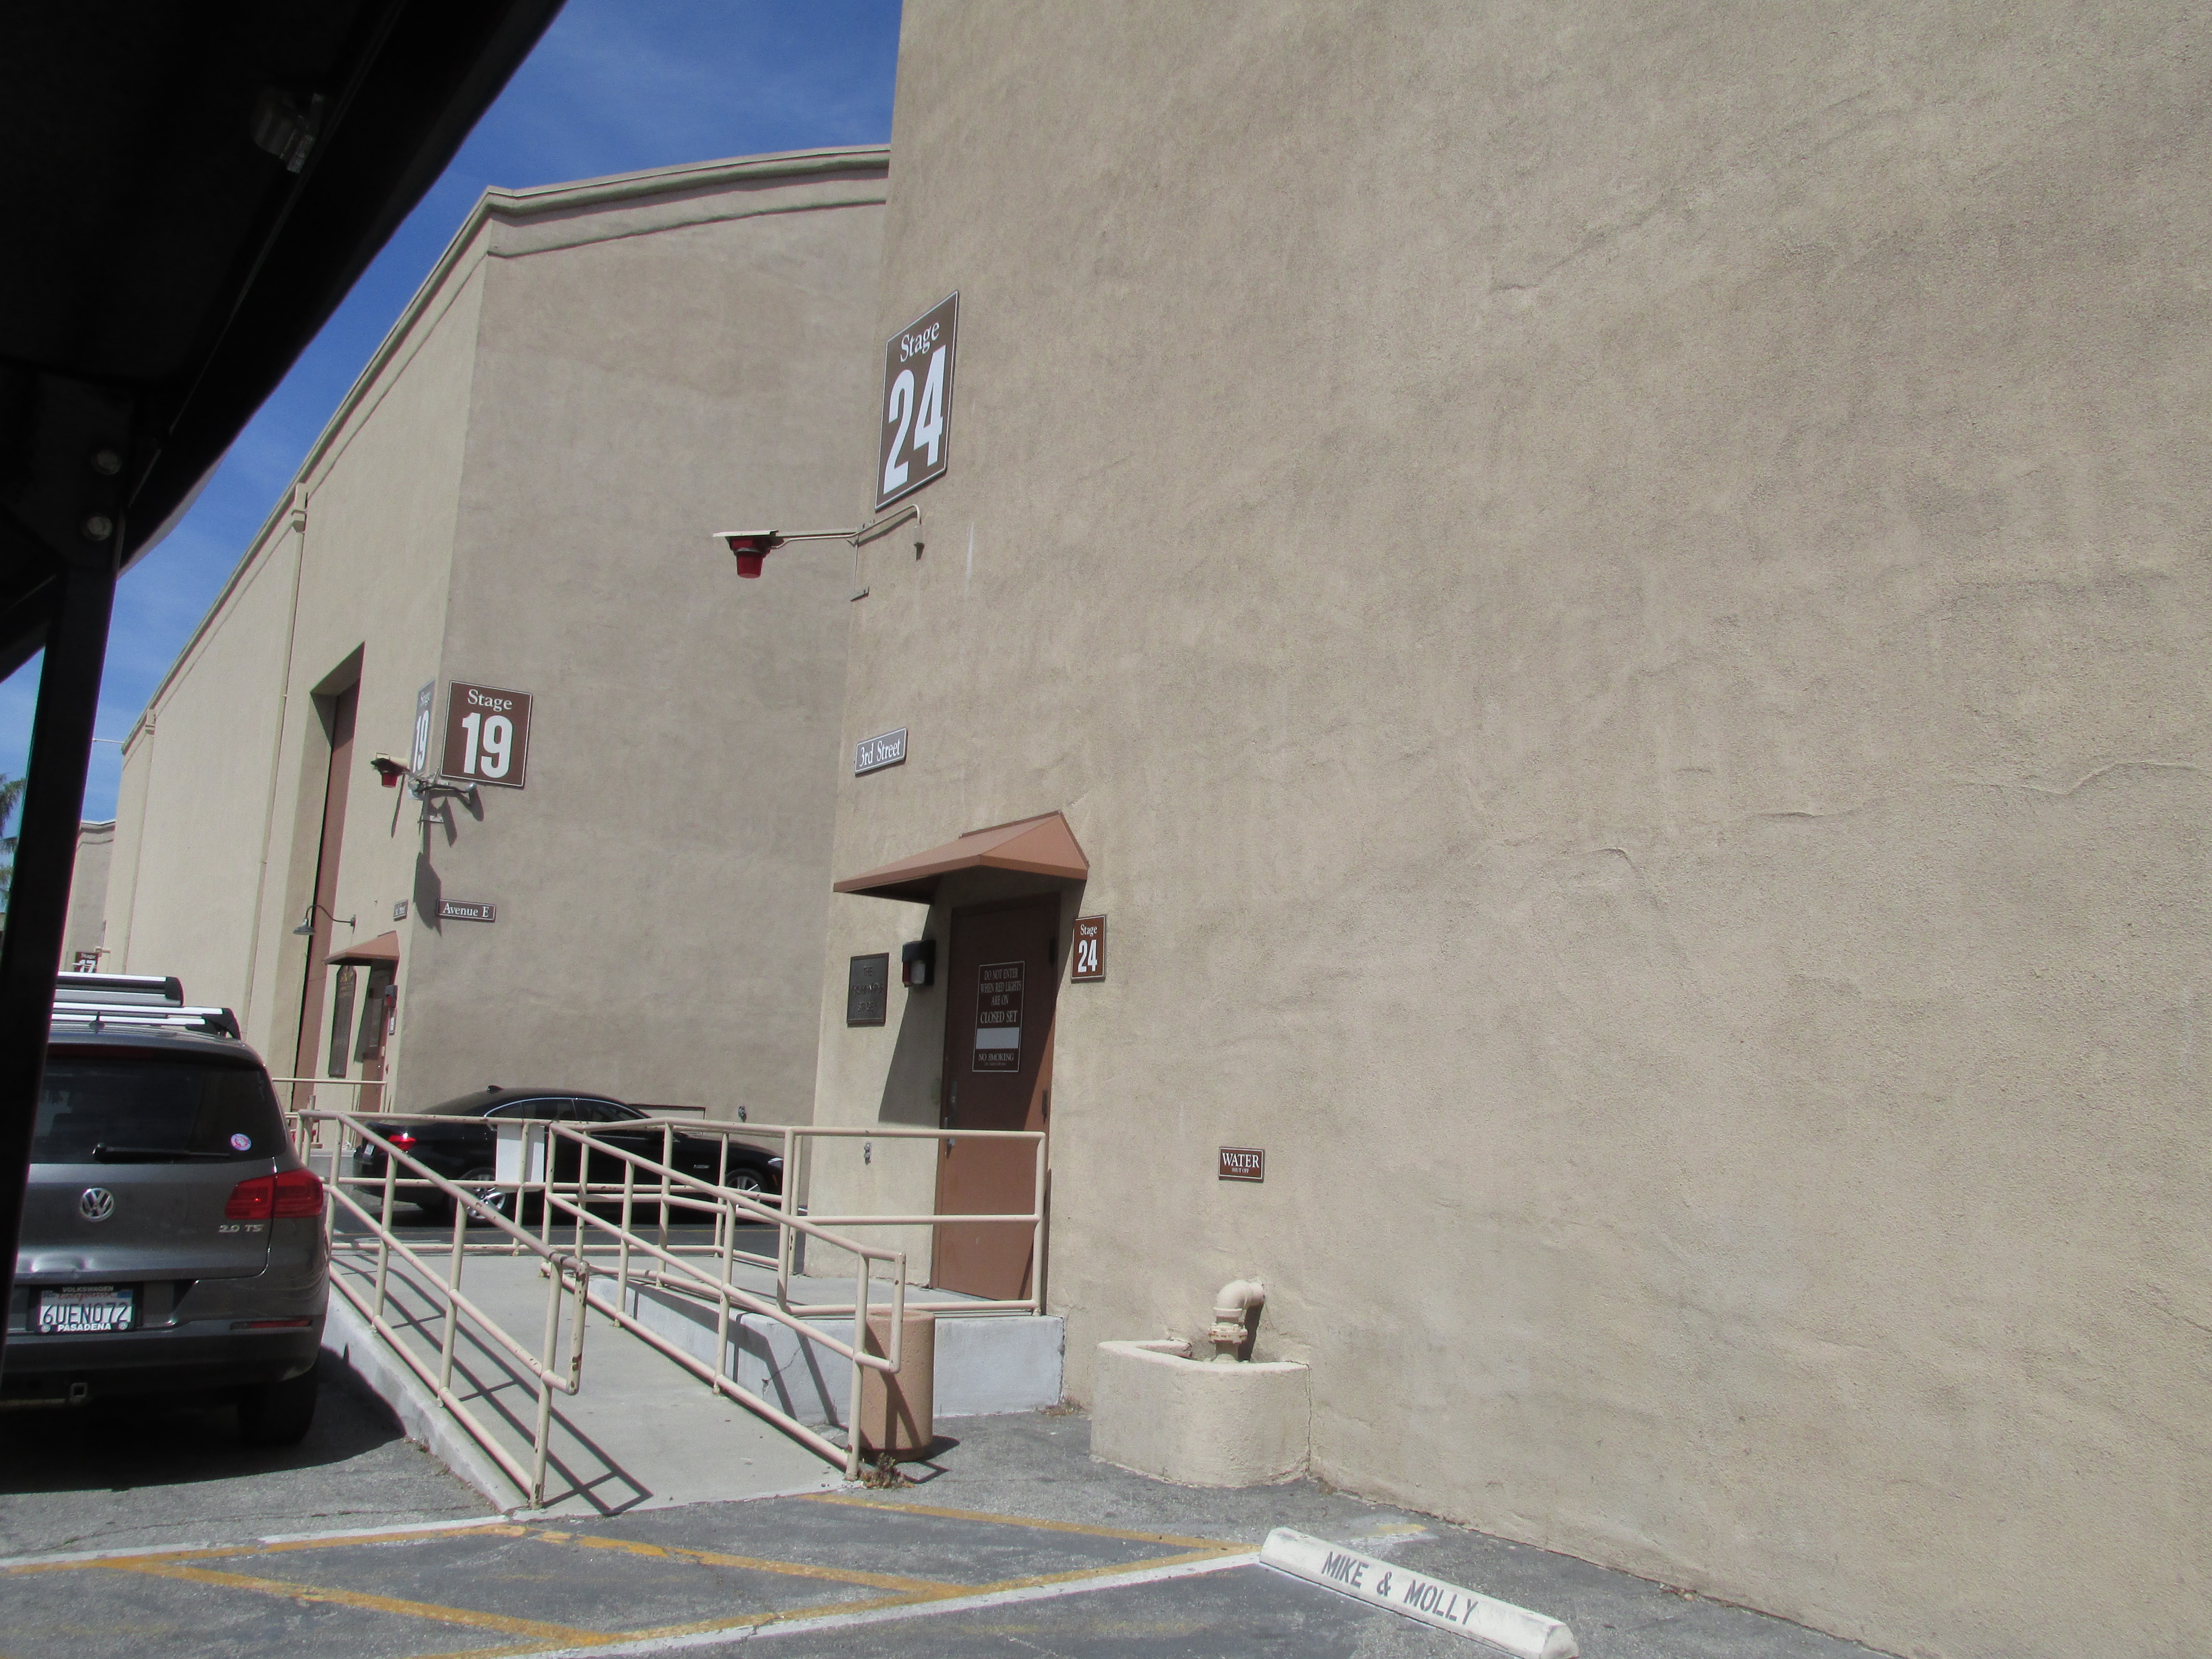 img 0780 - Visita a los estudios Warner Bros. de Los Angeles